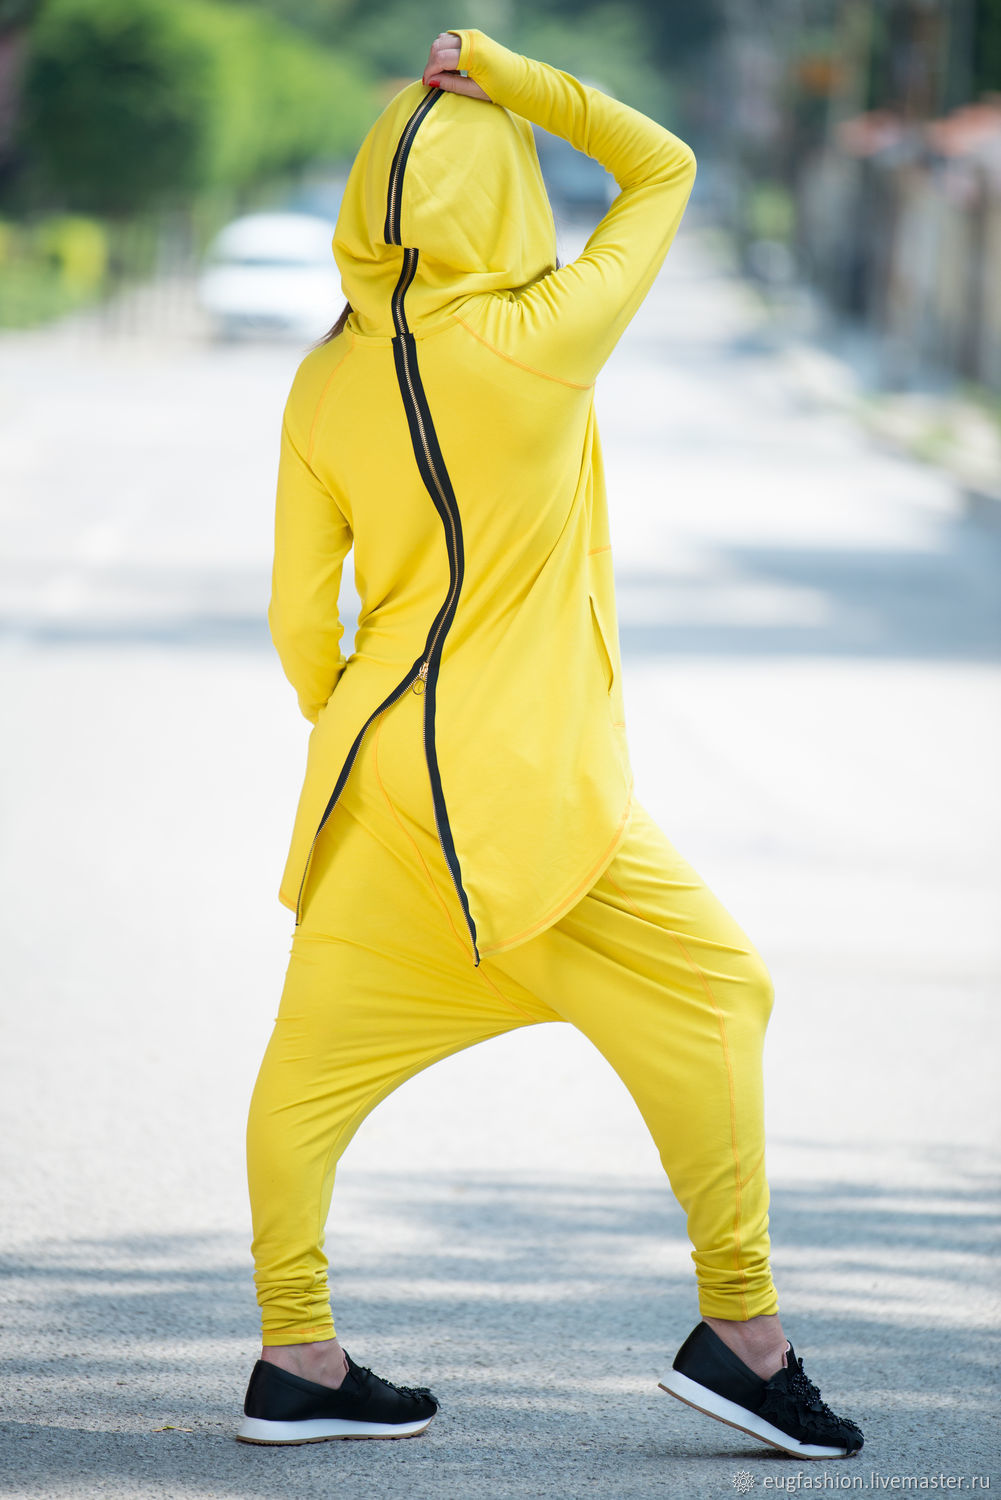 Низ спортивного костюма. Спортивный костюм адидас женский желтый. Желтый костюм адидас женский. Необычные спортивные костюмы. Спортивный костюм с капюшоном.